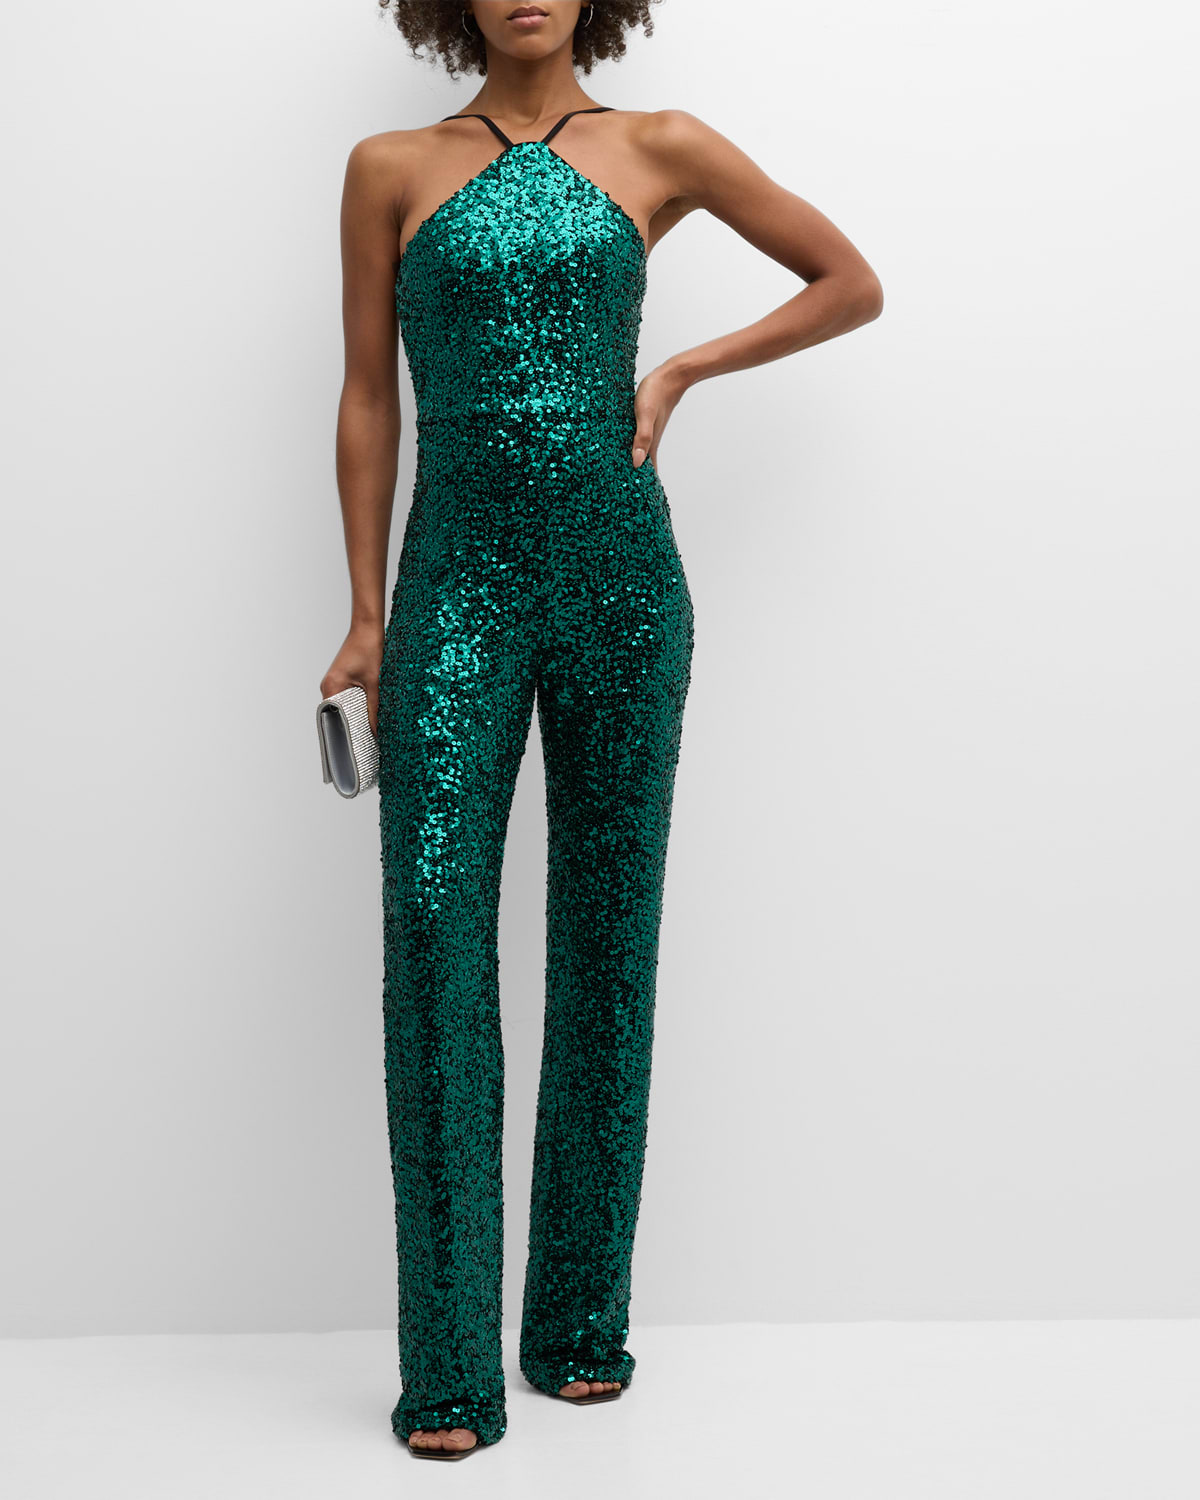 Dress The Population Black Label Darian Sequin Halter Jumpsuit In Deep Emerald